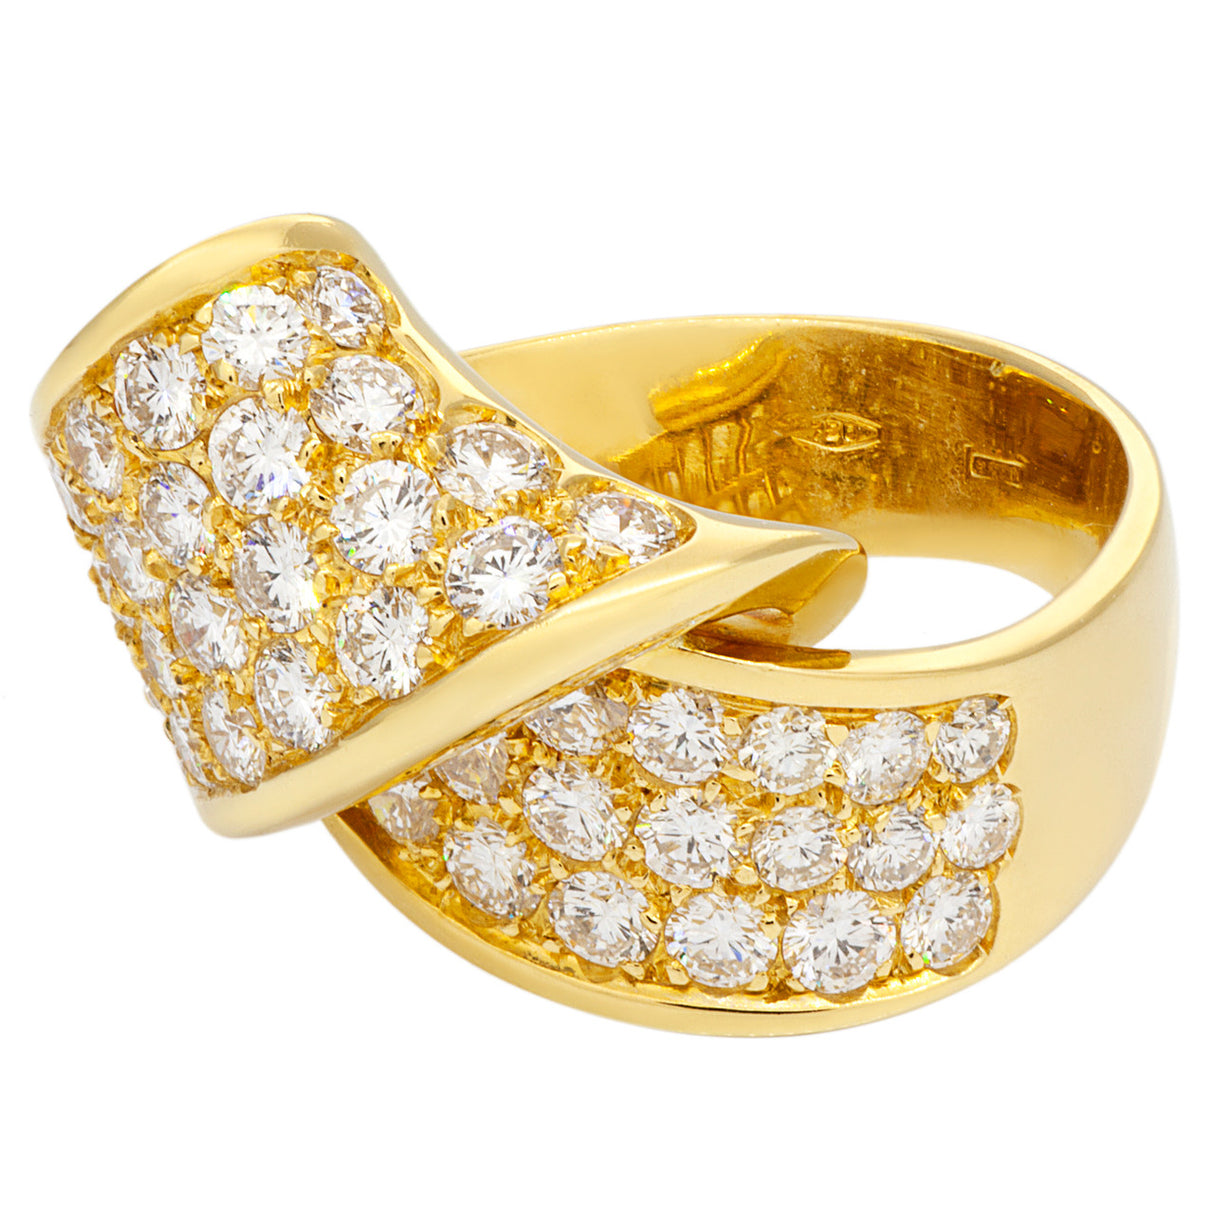 18K Gold 2.65 Carat Pave Diamond Ring